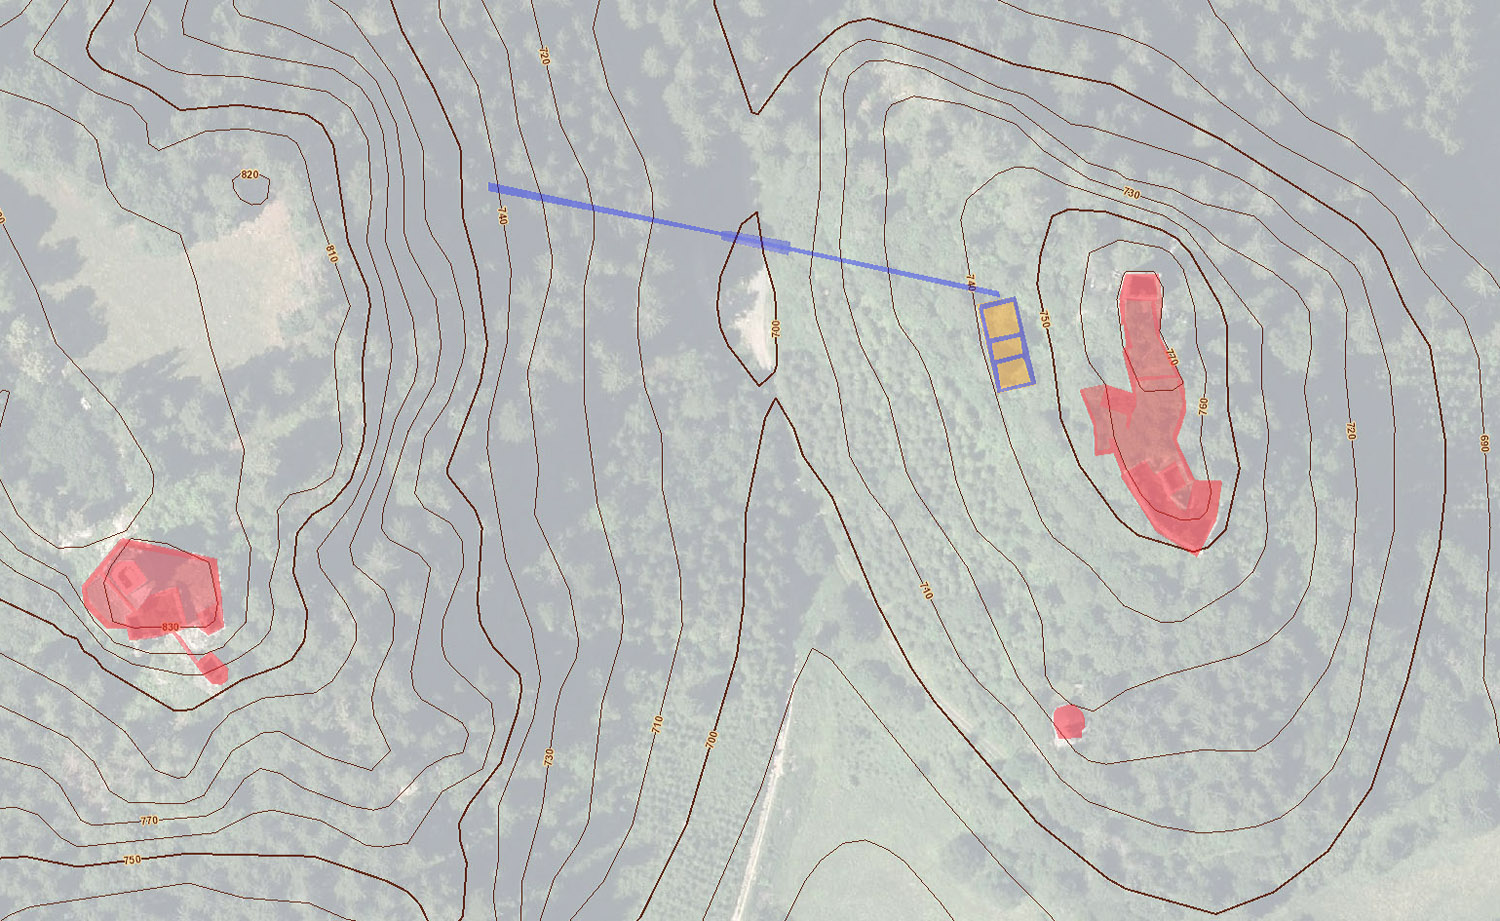 Kraiger Schlösser: Höchenschichtenplan, links Hochkraig, rechts Niederkraig, Kasten gelb, Aquadukt und vermutete Wasserleitung blau. (Basis Kagis)